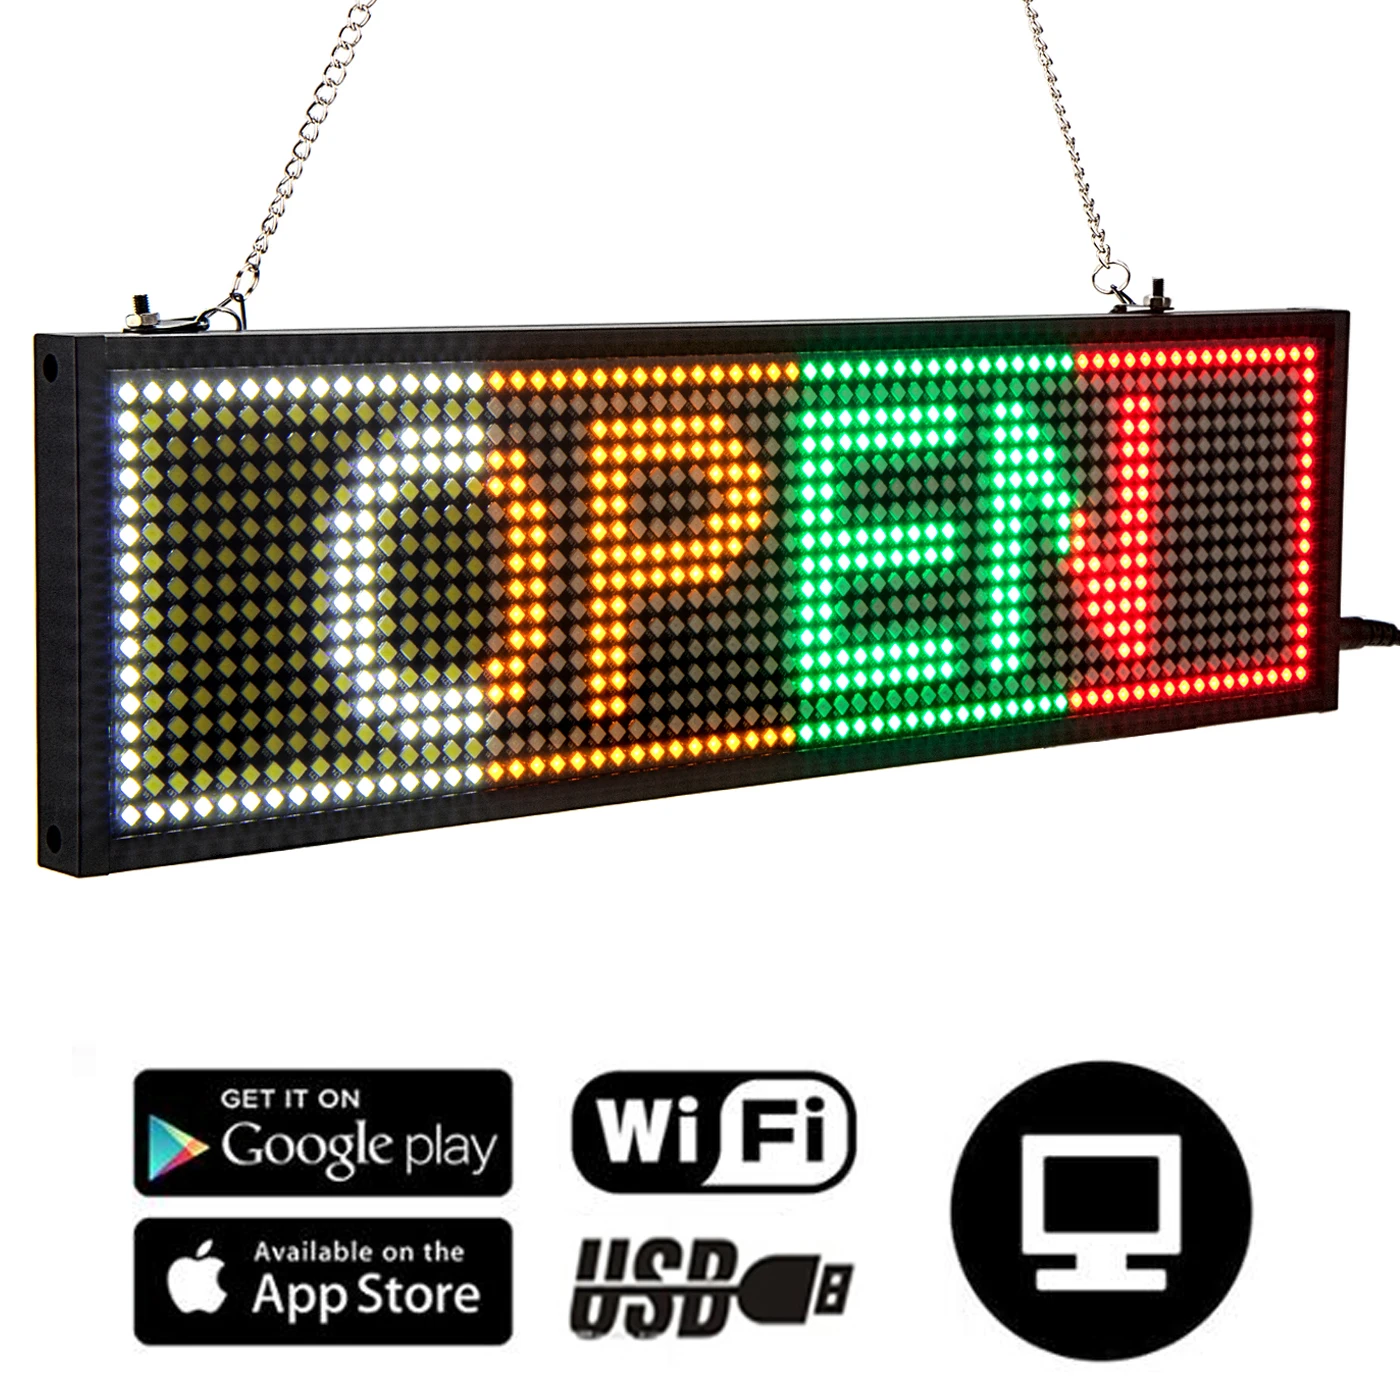 広告用LEDディスプレイパネル,プログラム可能なスクロール,wifi付き,5 34cm,ビジネス用,混合色led signagep5 smdled display  panel - AliExpress